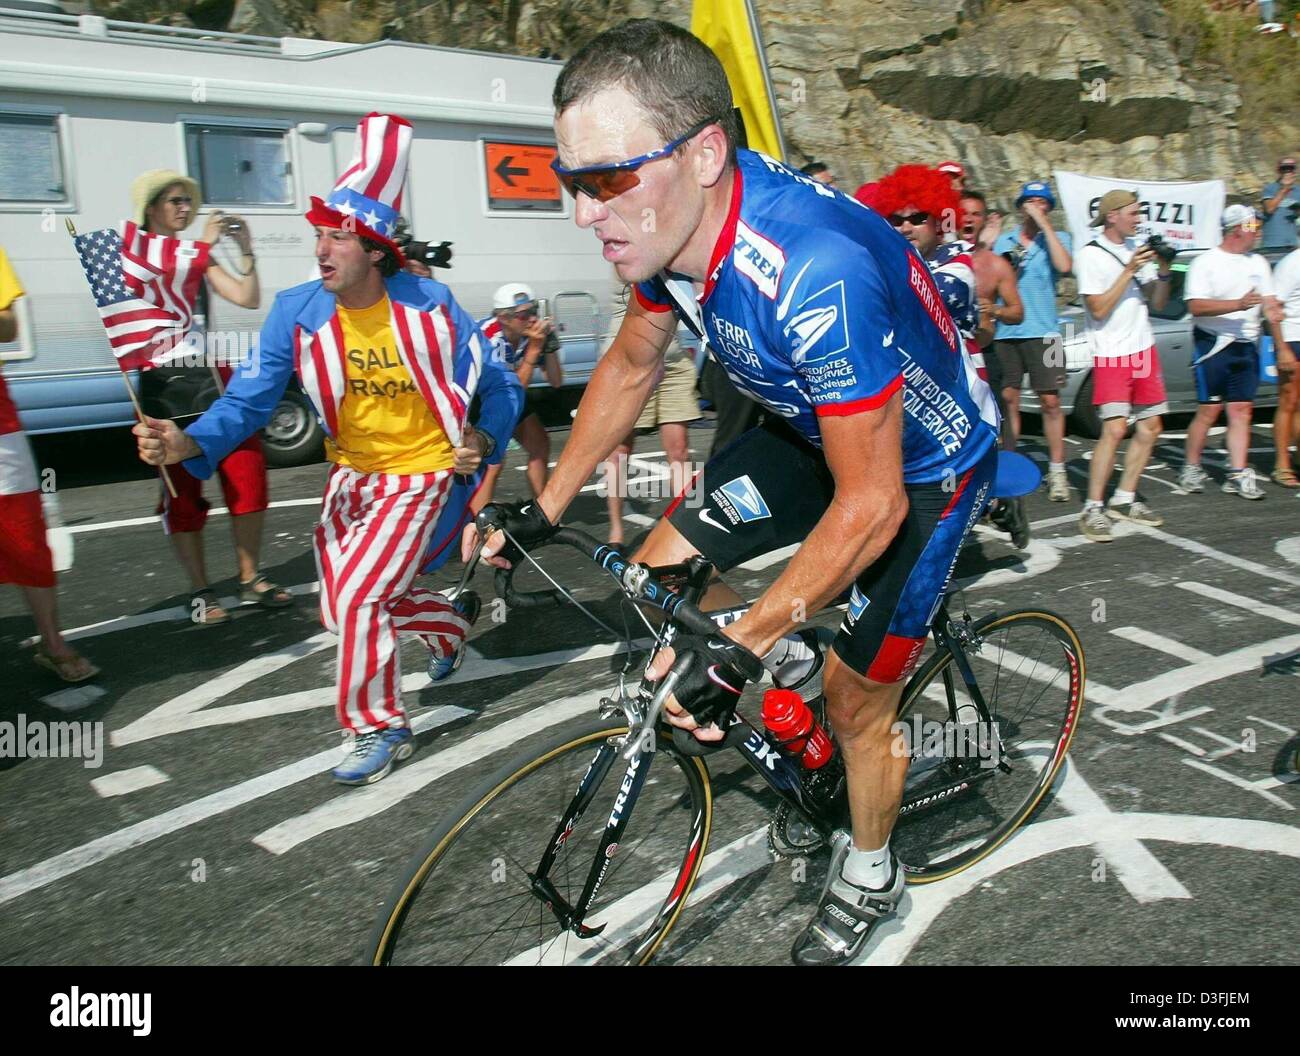 (Dpa) - US Postal-Berry Floor's Lance Armstrong de l'US obtient le soutien d'un ventilateur car il sprints pour la ligne d'arrivée à la fin de la 8e étape du Tour de France 2003 vélo course à l'Alpe d'Huez, France, 13 juillet 2003. Iban Mayo de l'Euskaltel-Euskadi depuis l'Espagne a remporté la 8e étape, Armstrong est arrivé en troisième place et a pris le maillot jaune de leader du général. La 8ème jambe est une montagne Banque D'Images